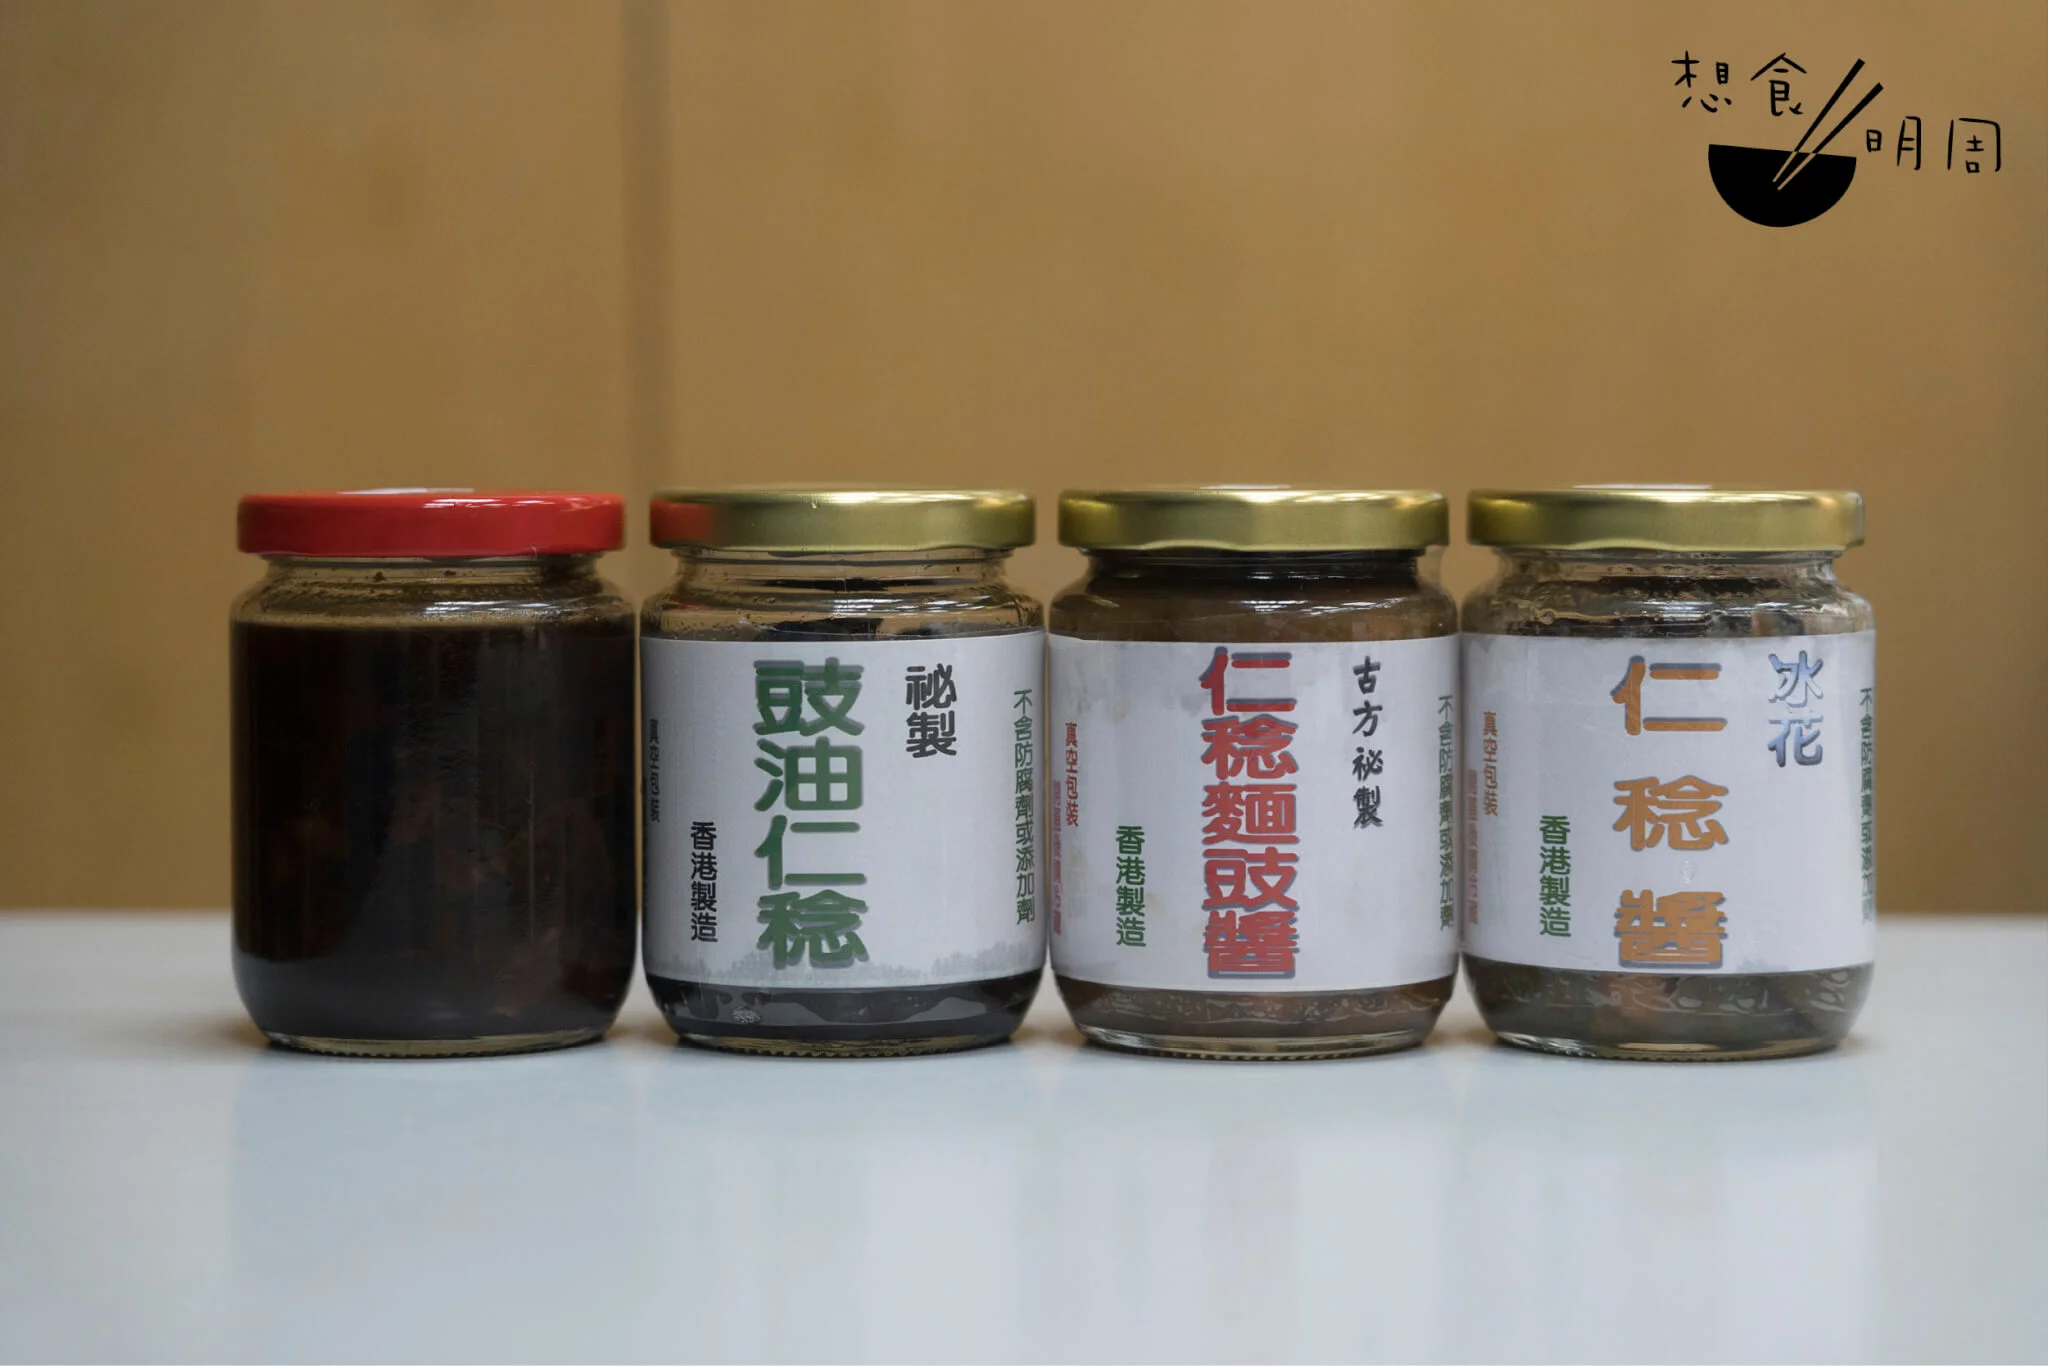 因人手不足，今年悅和只製冰花仁稔醬（$60），現正於荃灣門市有售。